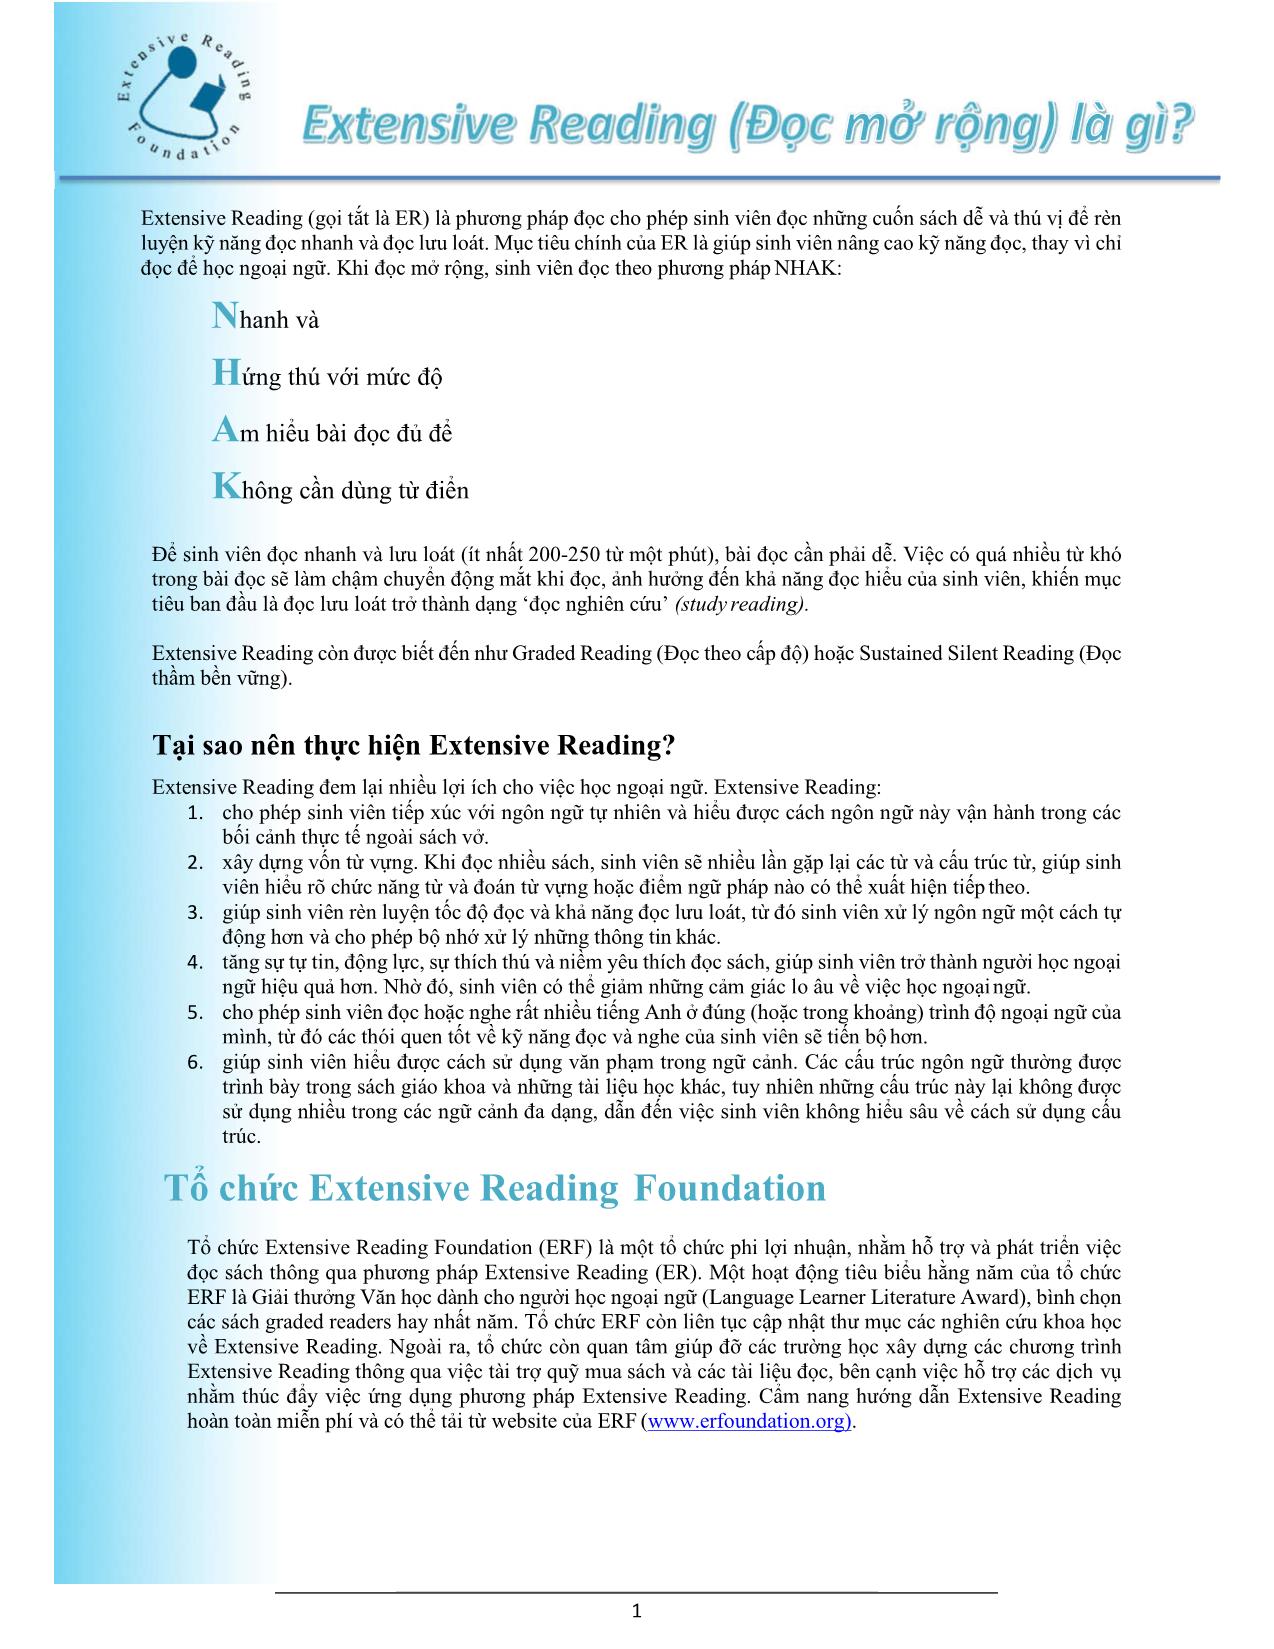 Cẩm nang hướng dẫn về Extensive Reading trang 2